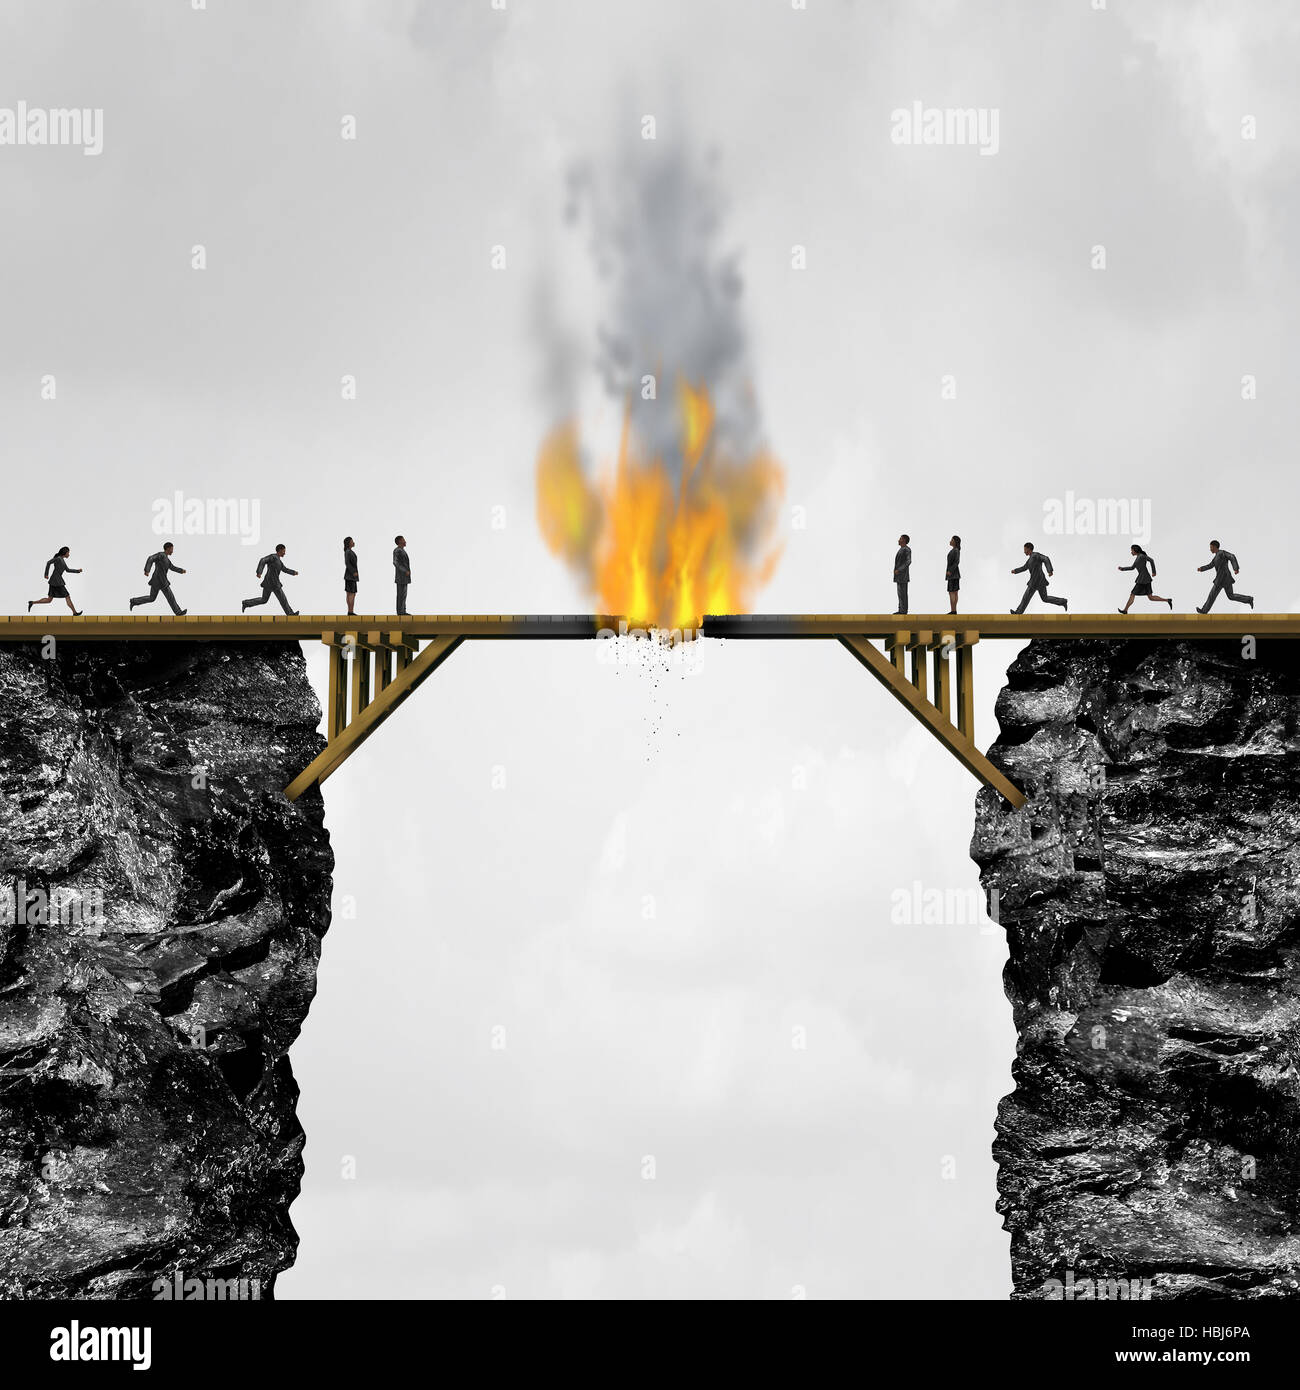 Ponte di masterizzazione concetto come gruppi di persone divise da un ponte di legno sul fuoco come un business connection metafora del rischio di distruzione di un link o isolatio Foto Stock